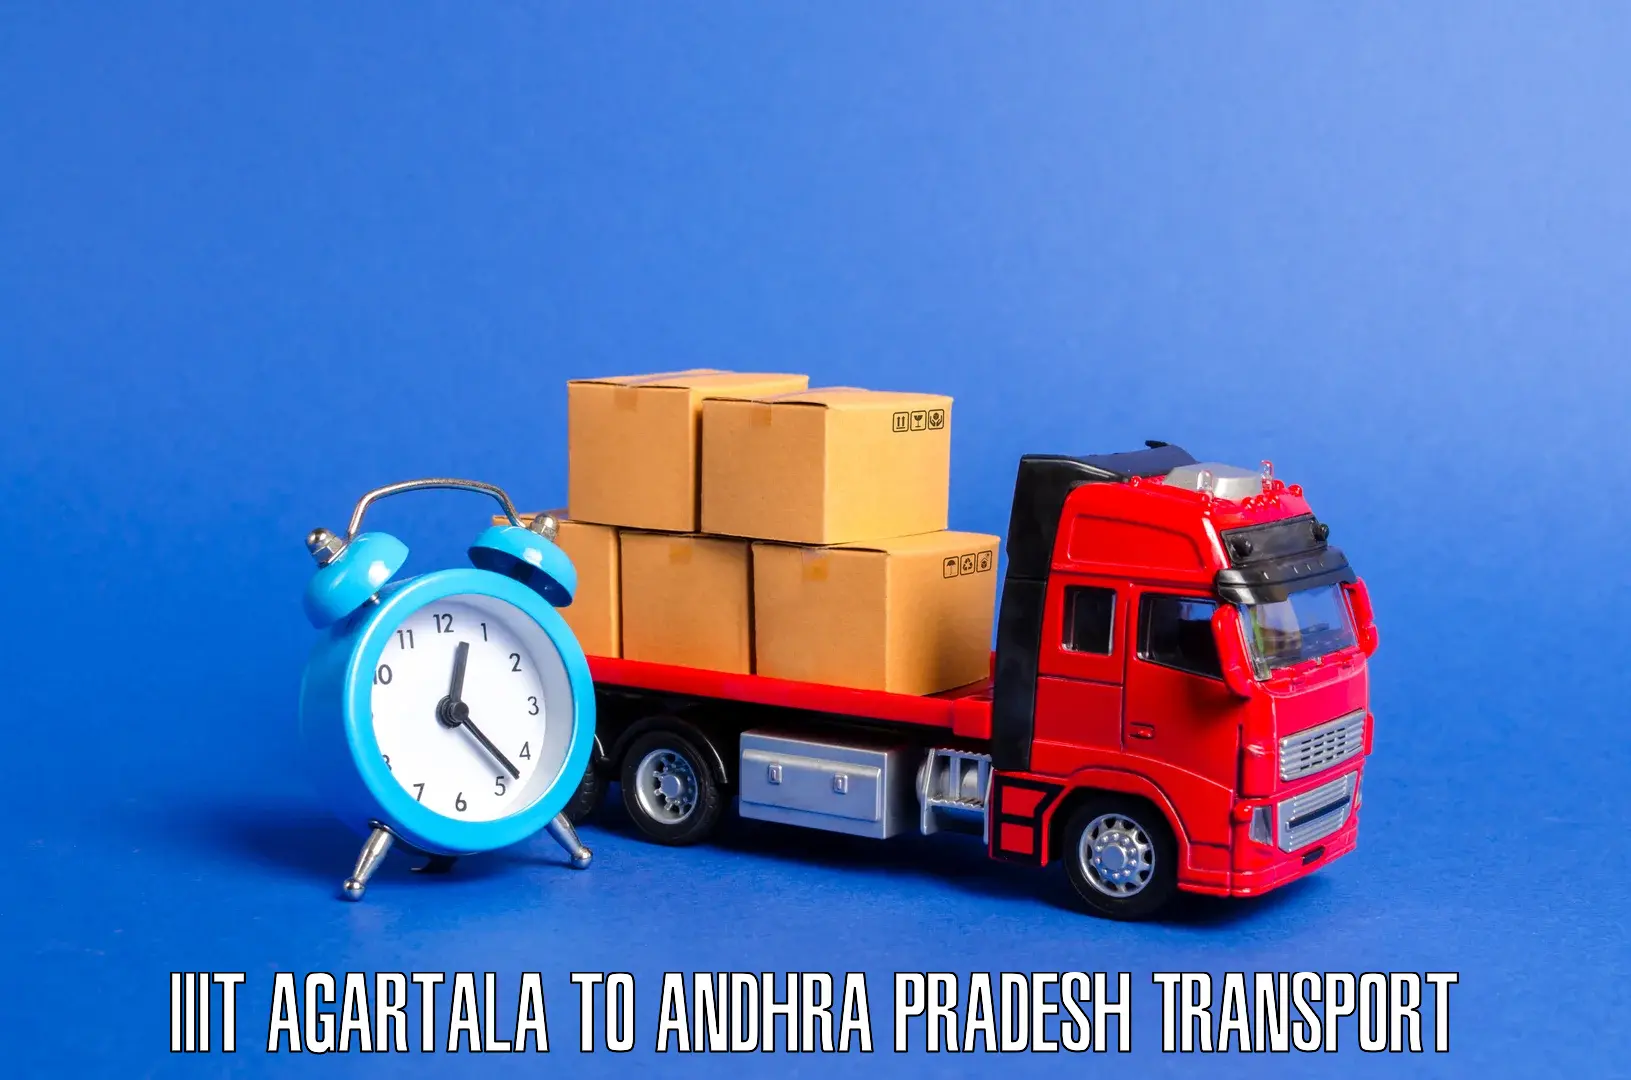 Nearest transport service IIIT Agartala to Buckinghampet